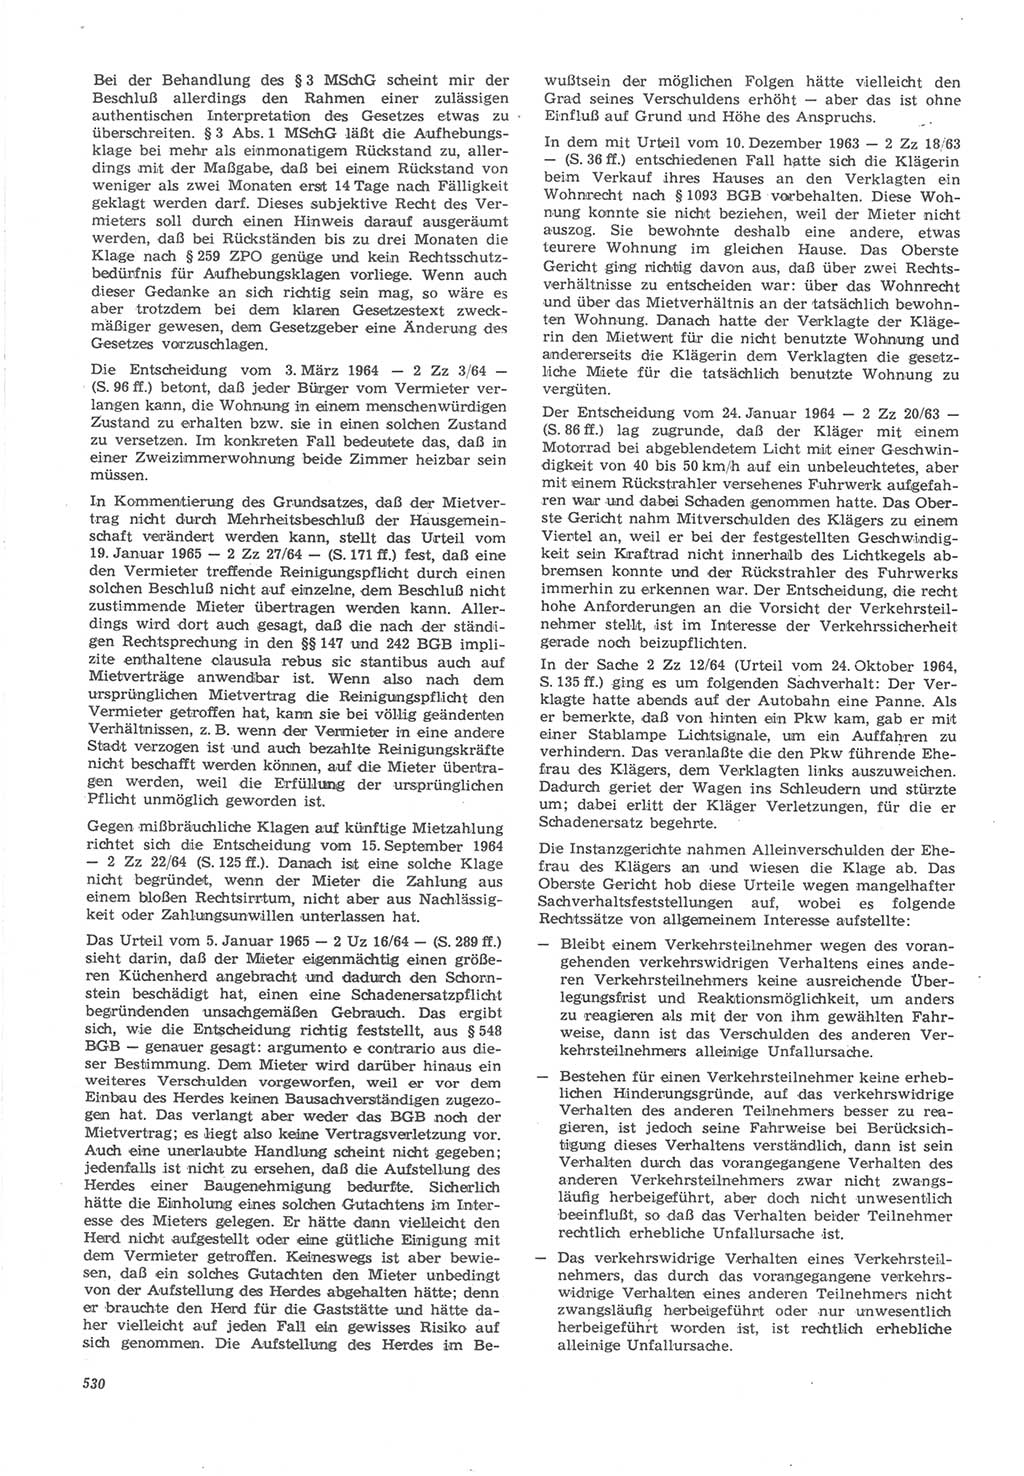 Neue Justiz (NJ), Zeitschrift für Recht und Rechtswissenschaft [Deutsche Demokratische Republik (DDR)], 22. Jahrgang 1968, Seite 530 (NJ DDR 1968, S. 530)